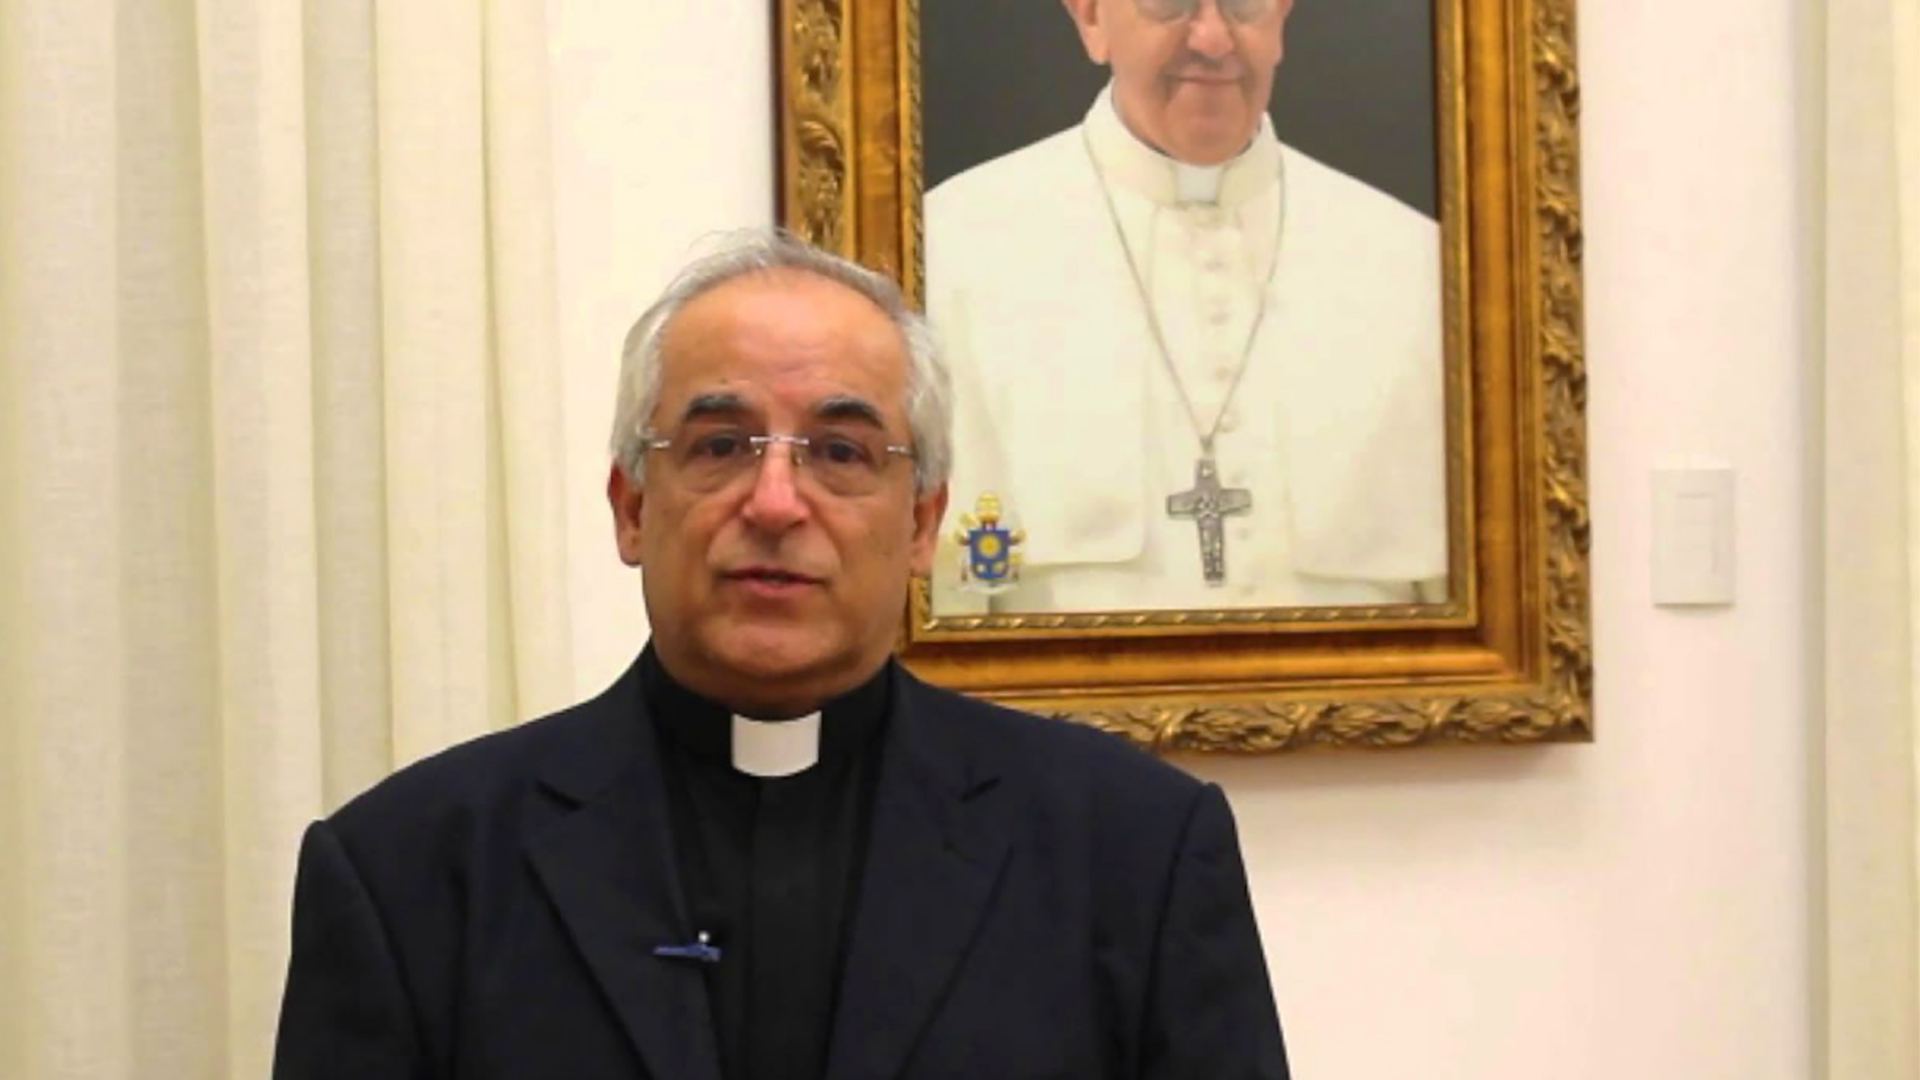 Mgr Giovanni d'Aniello, dans le service diplomatique du Saint-Siège depuis 1983 | capture youtube.com 